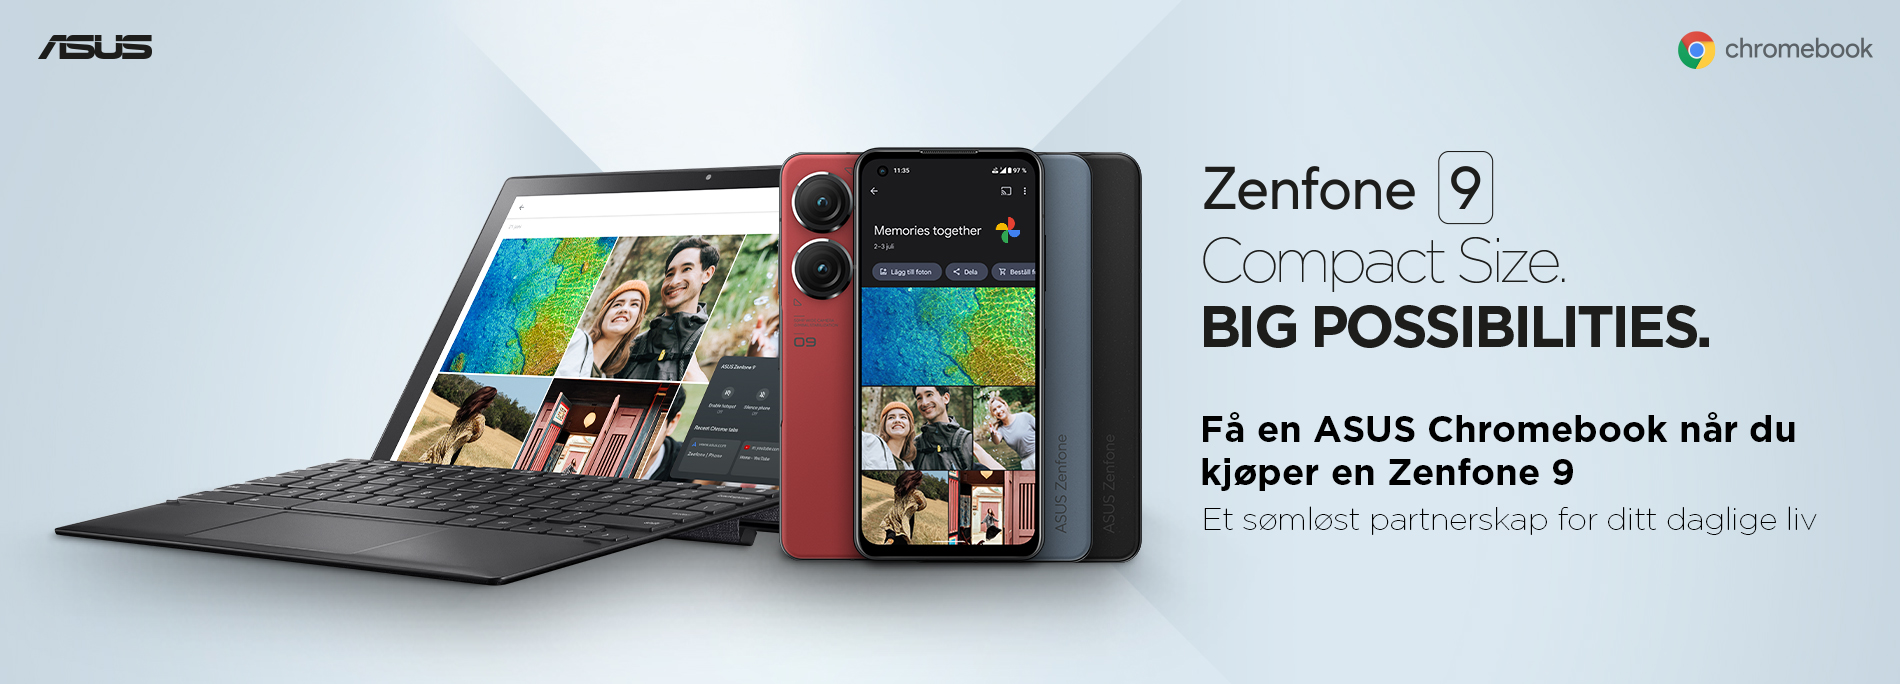 Zenfone 9 pakketilbud: Få en ASUS Chromebook gratis.